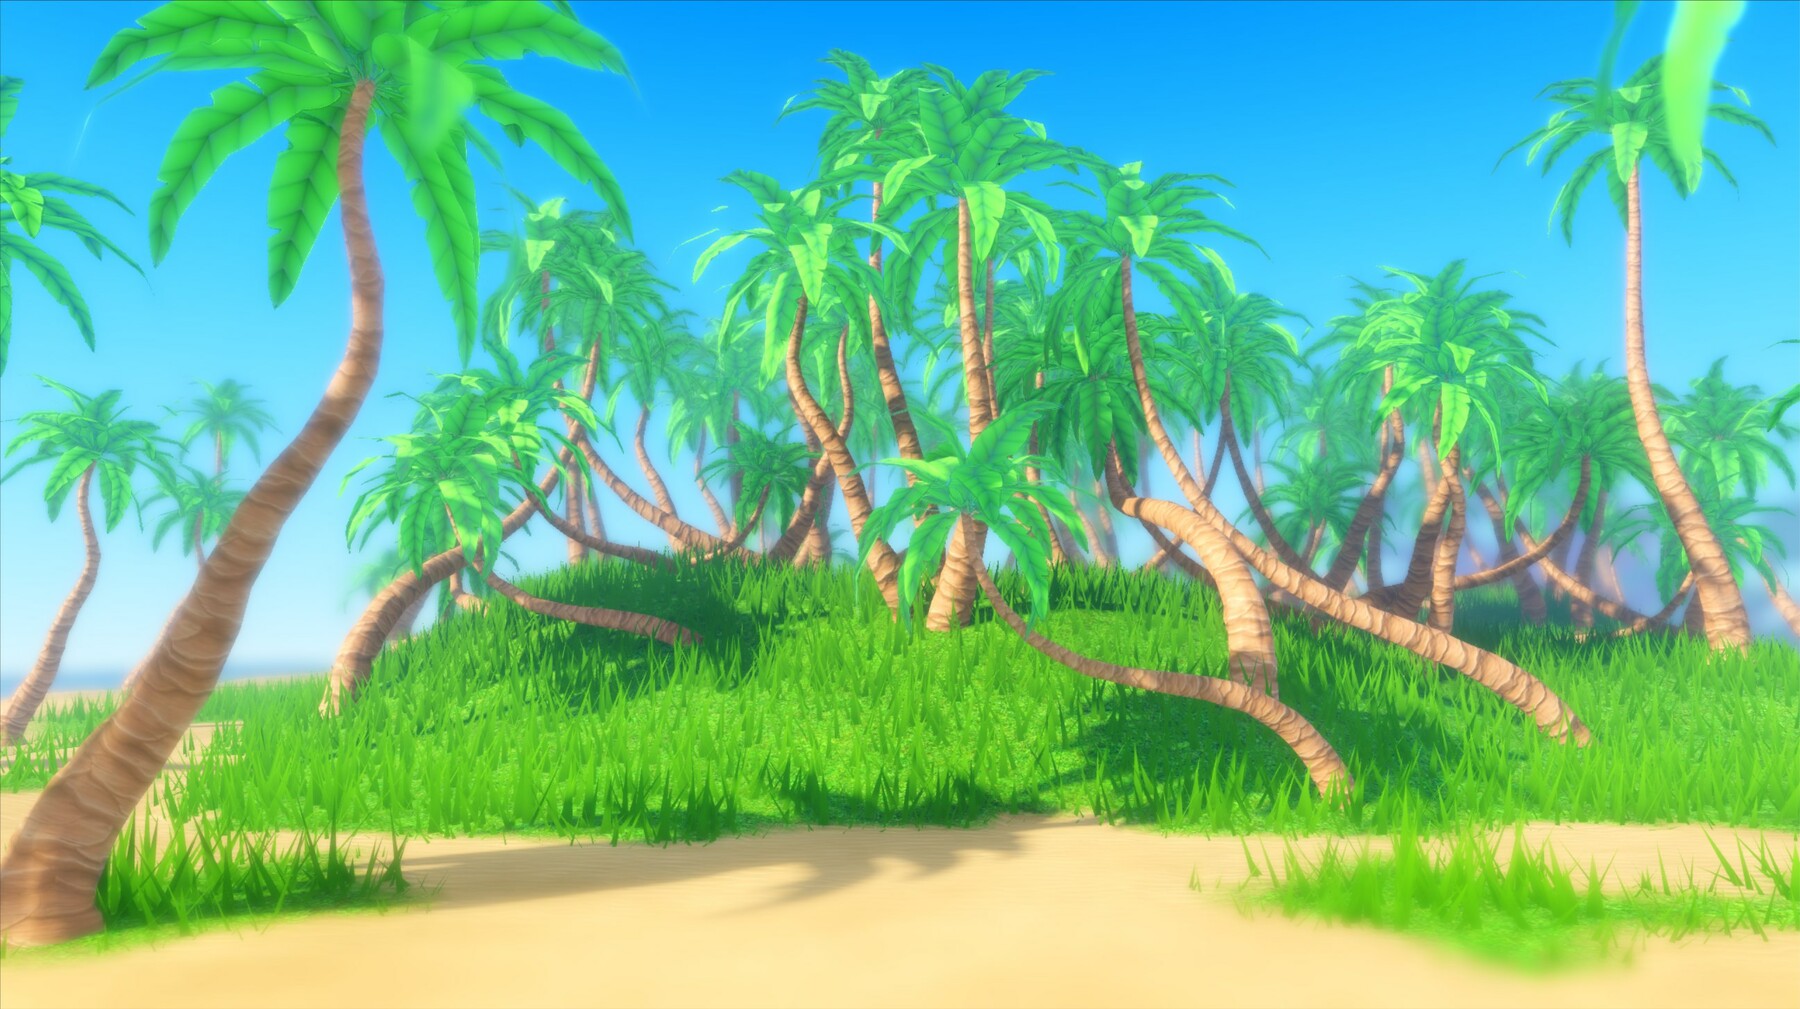 Bạn yêu thích Roblox và muốn thử kỹ năng tạo hình dáng trên trò chơi? Tài nguyên gốc stylized palm trees sẽ cho phép bạn sáng tạo trên trò chơi Roblox theo ý tưởng của mình. Hãy khám phá và tạo nên những tác phẩm độc đáo trong trò chơi thế giới ảo này.